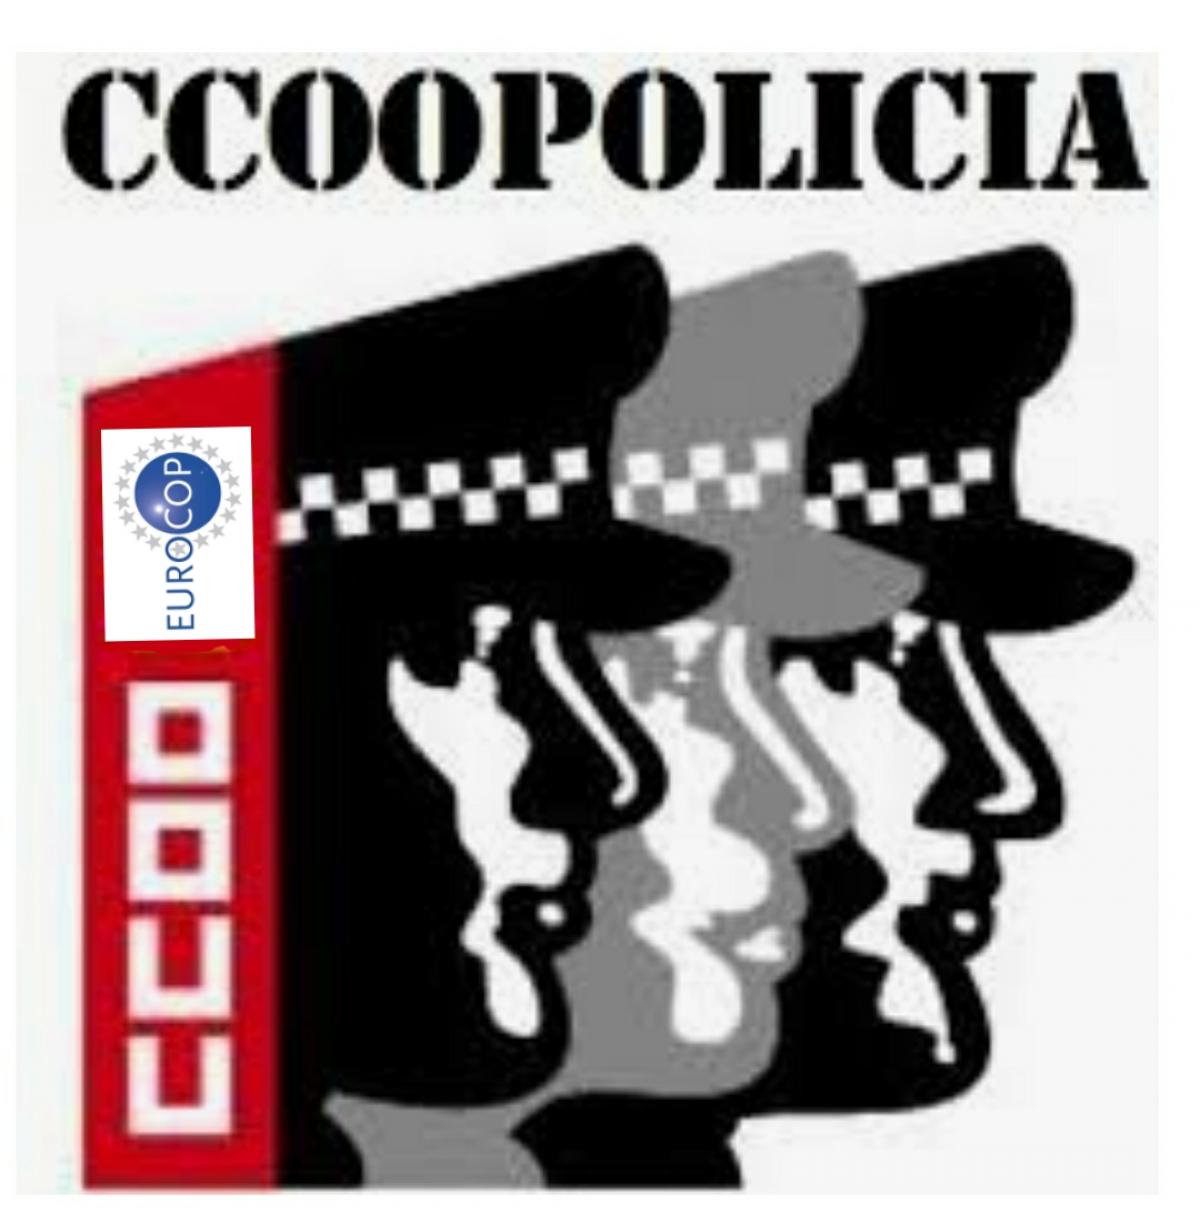 CCOO POLICIA EUROCOP